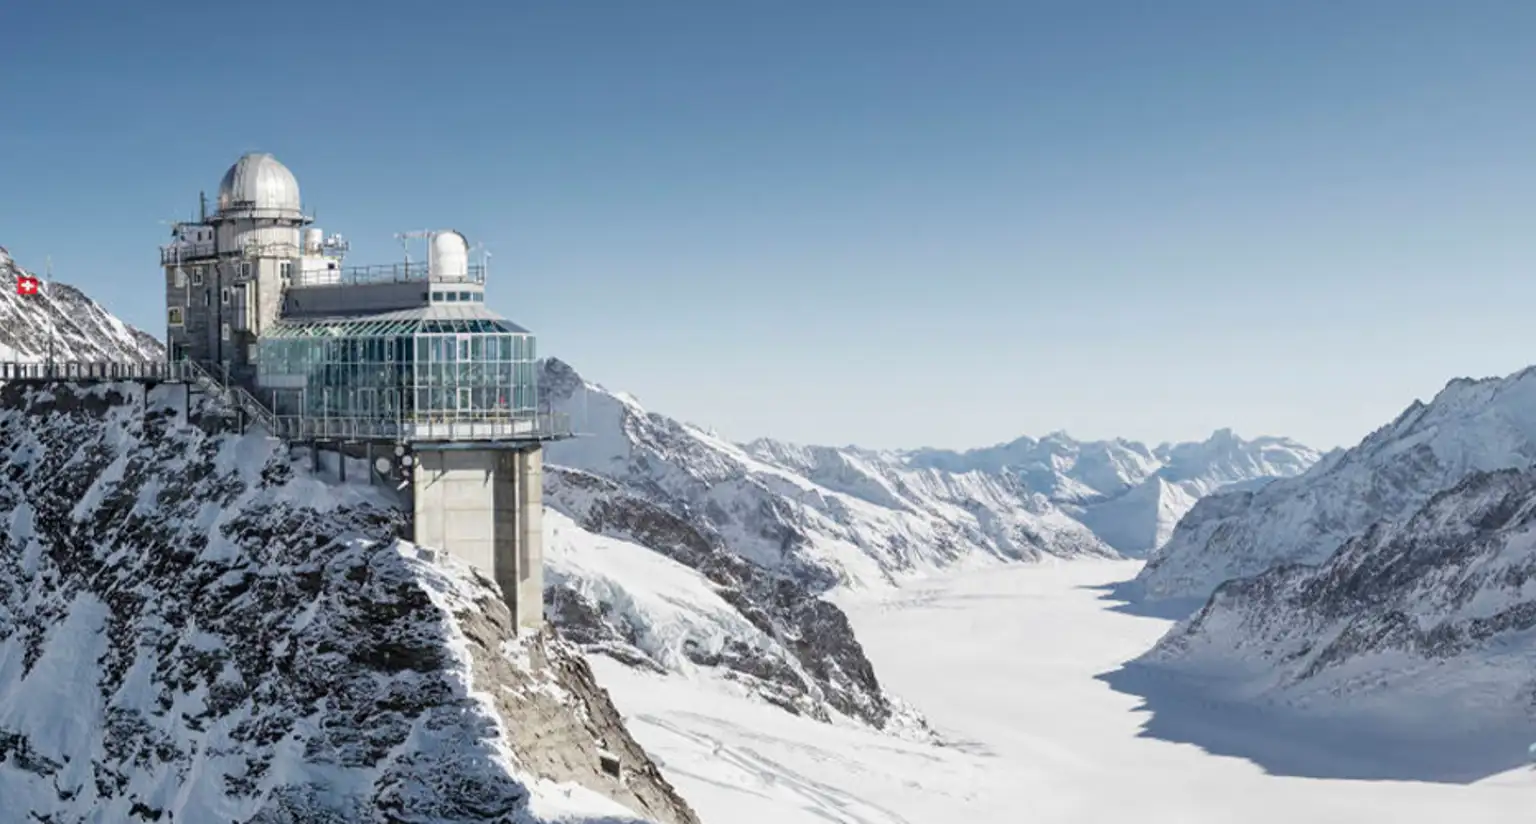 Falling in love with Jungfraujoch